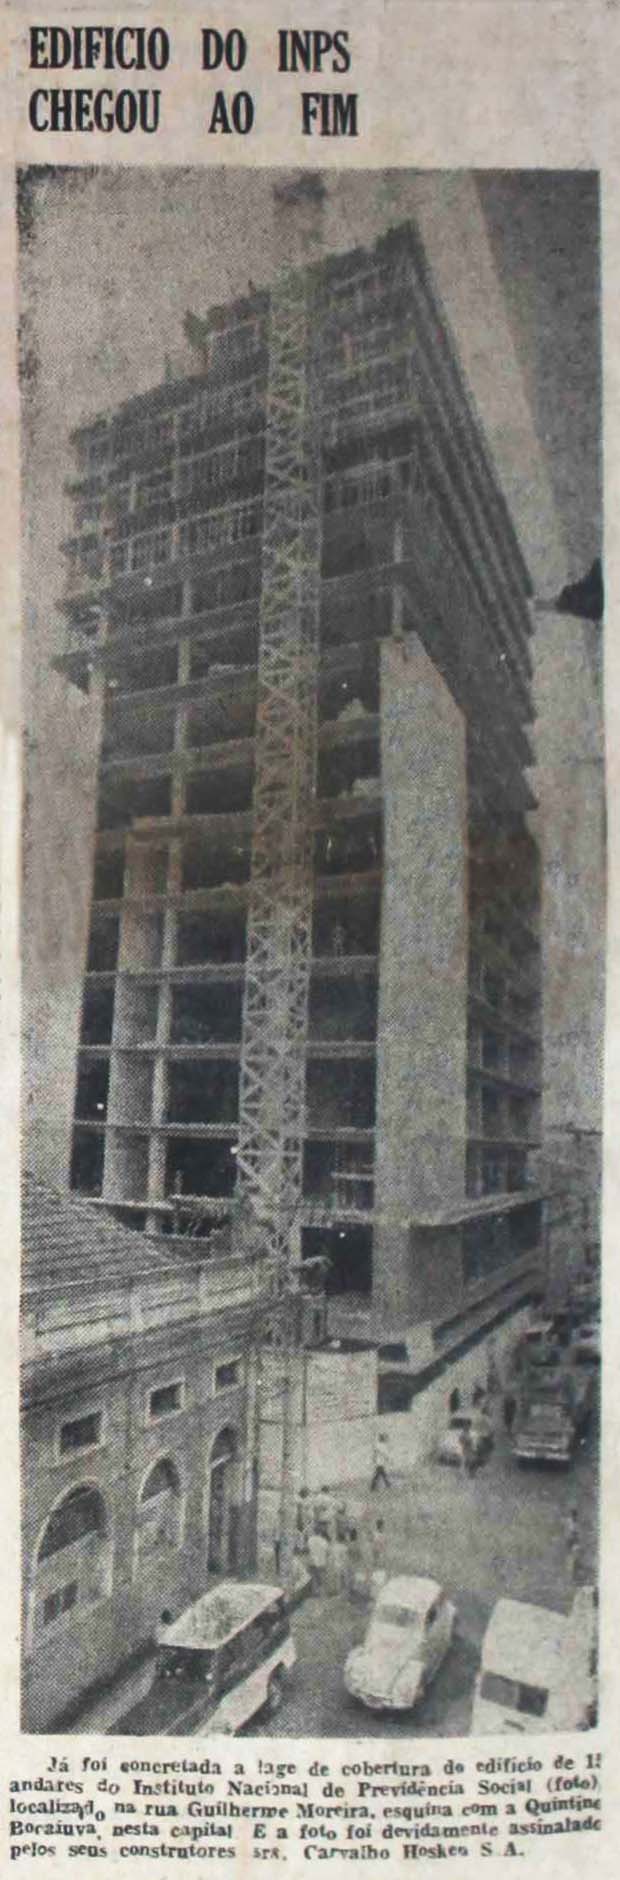 Construção do Edifício do INPS